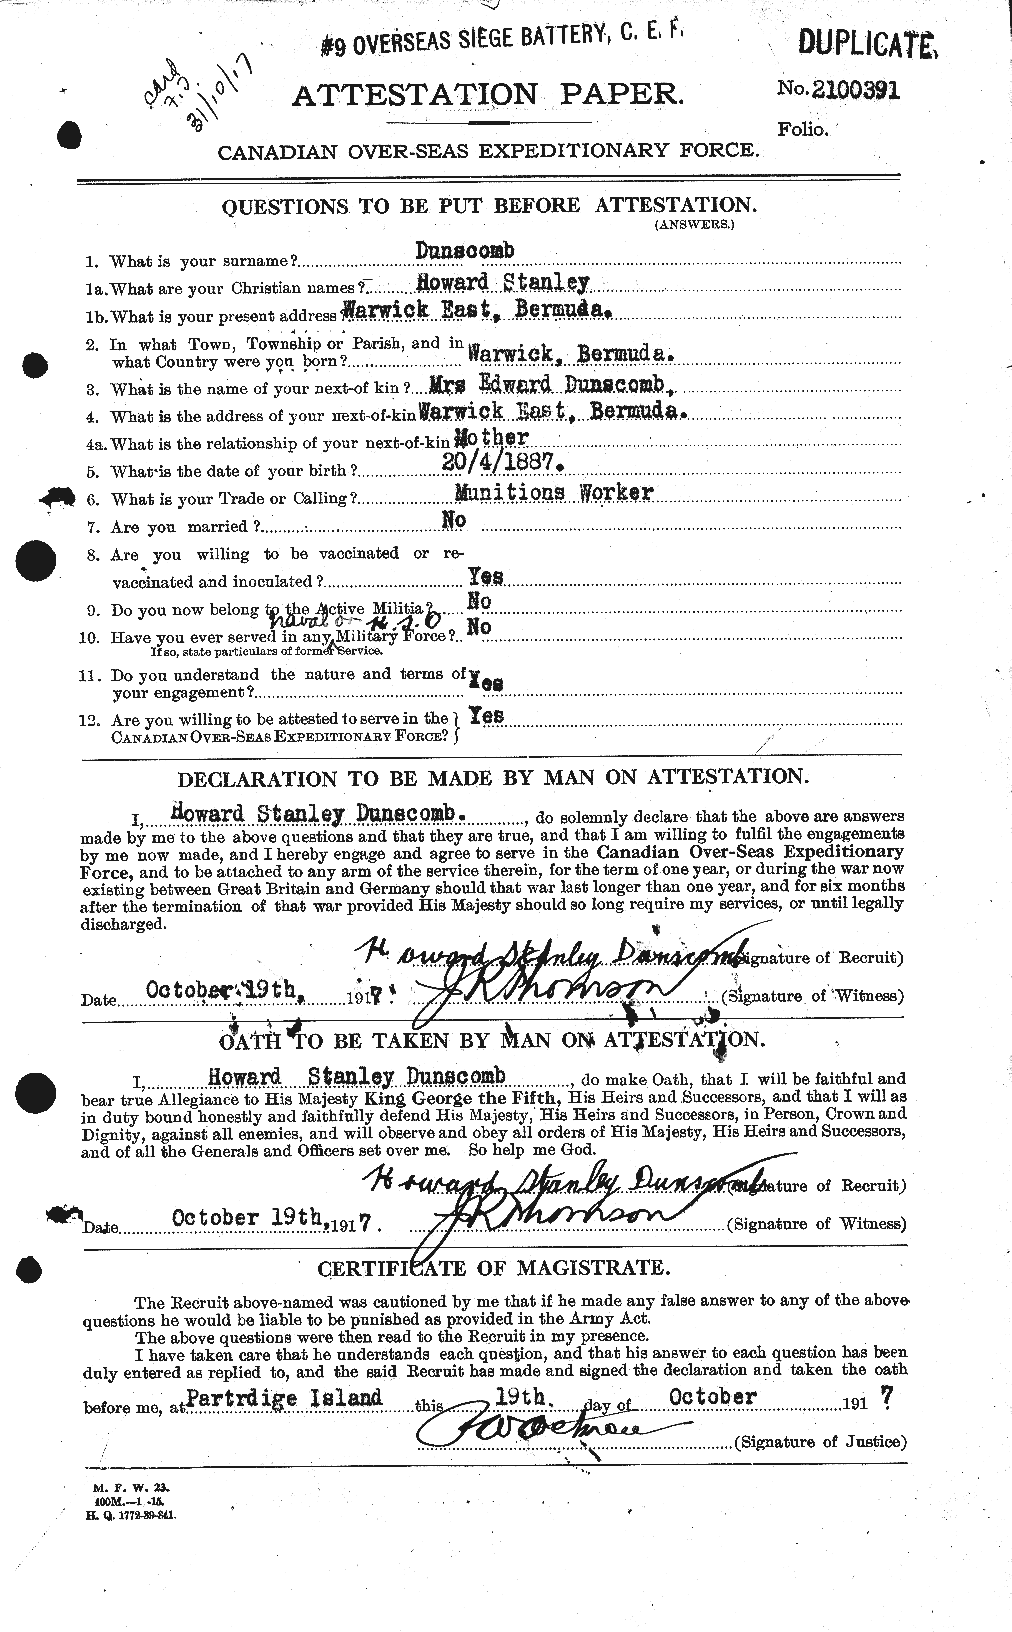 Dossiers du Personnel de la Première Guerre mondiale - CEC 304668a